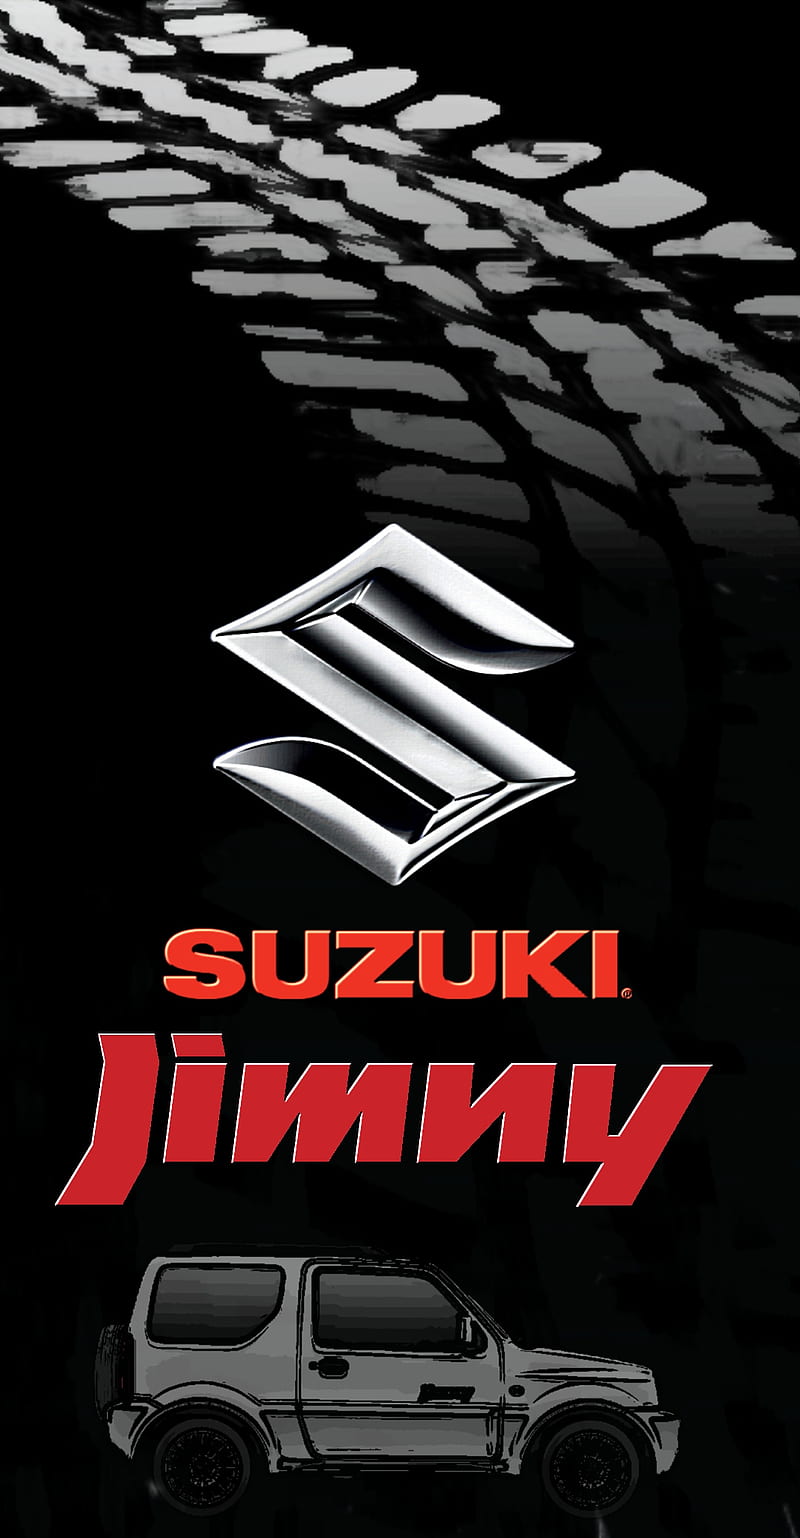 Suzuki Jimny, 4x4, jimmy, offroad, truck, HD phone wallpaper